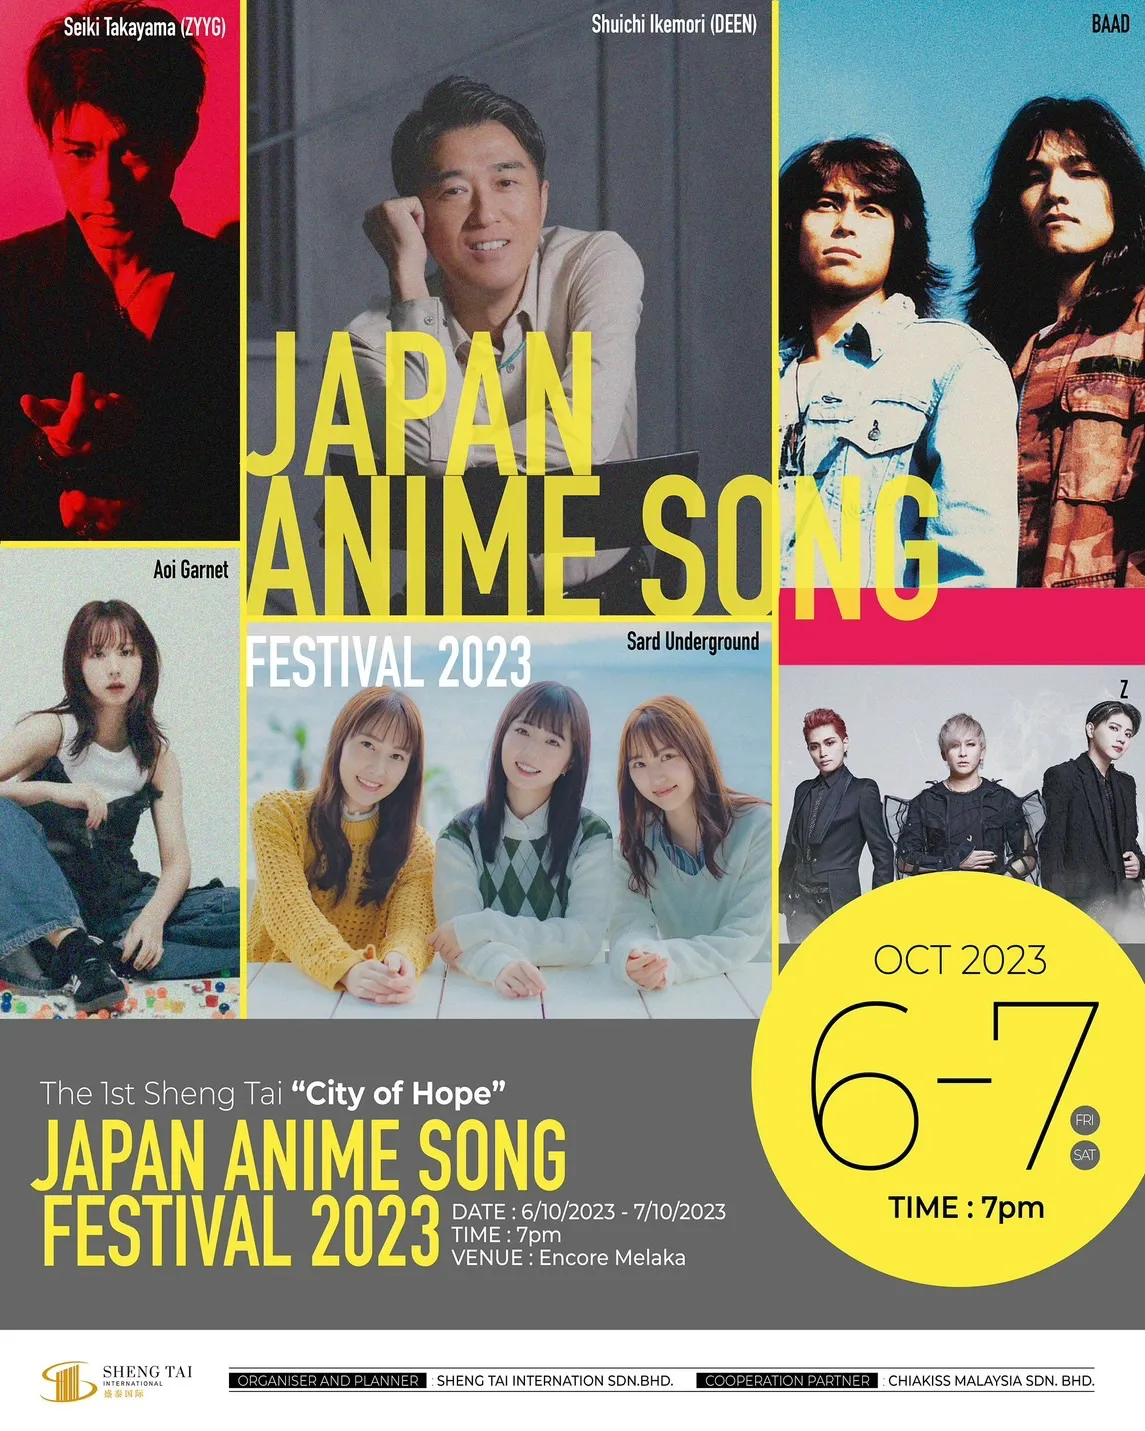 JAPAN ANIME SONG FESTIVAL 2023